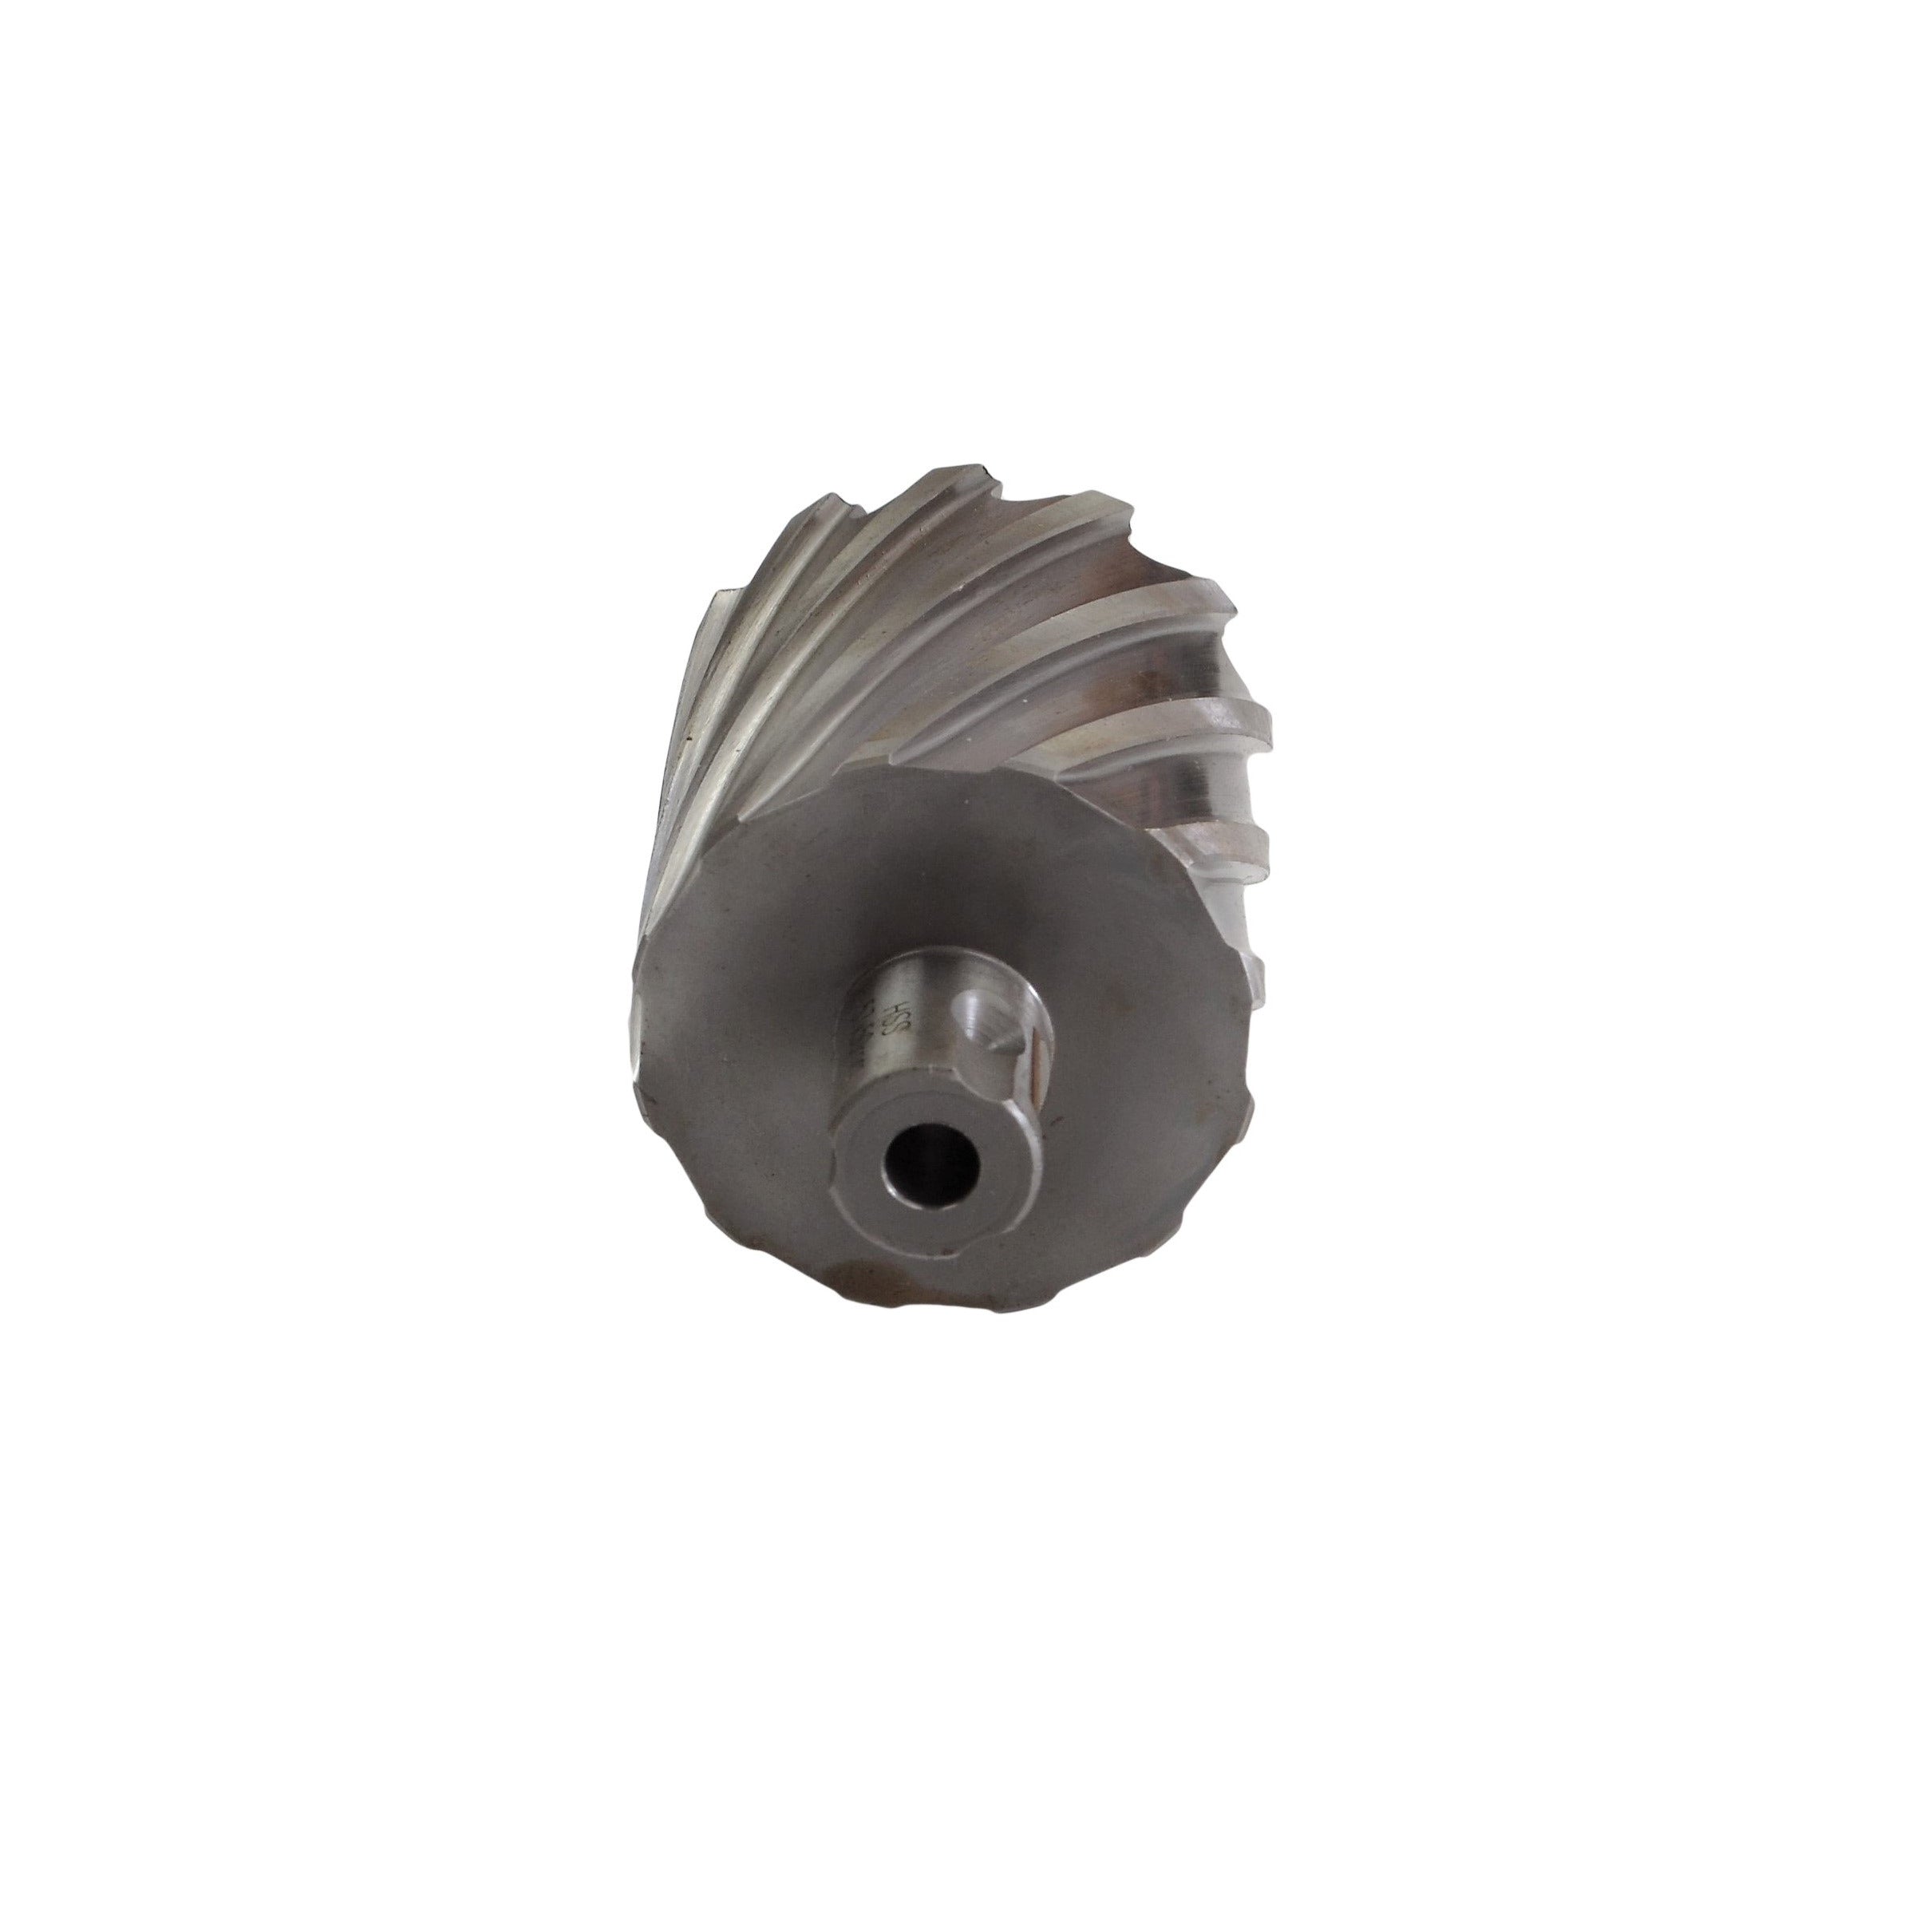 annular cutter 57x50mm broach cutter HSS CNC rotabroach slugger magnetic dril universal shank industrial metalwork suplies